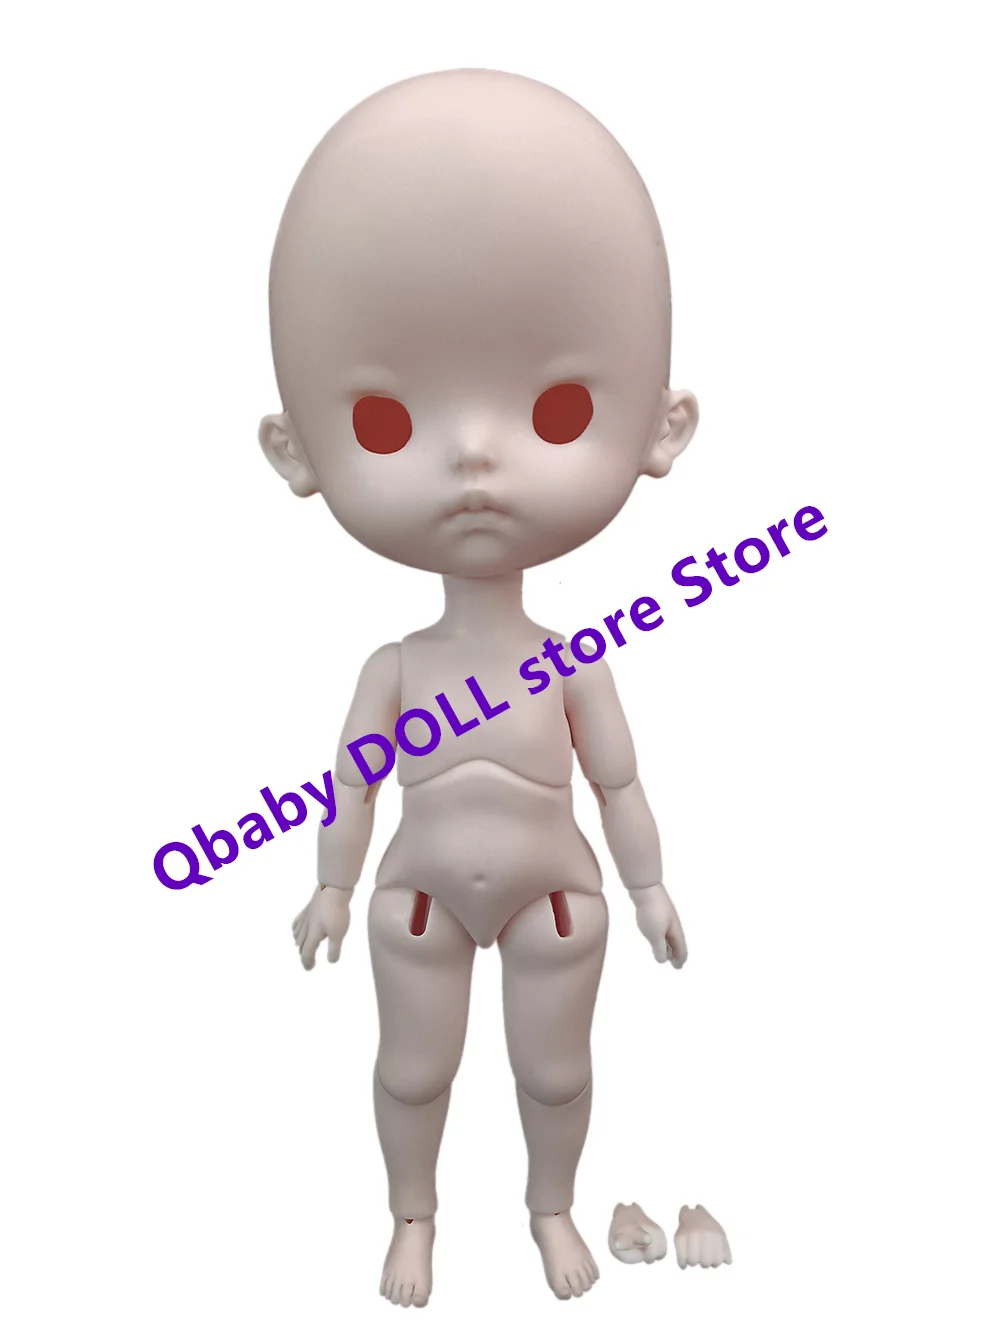 

Qbaby Doll store 1 / 6 regalos de juguetes de resina aya B